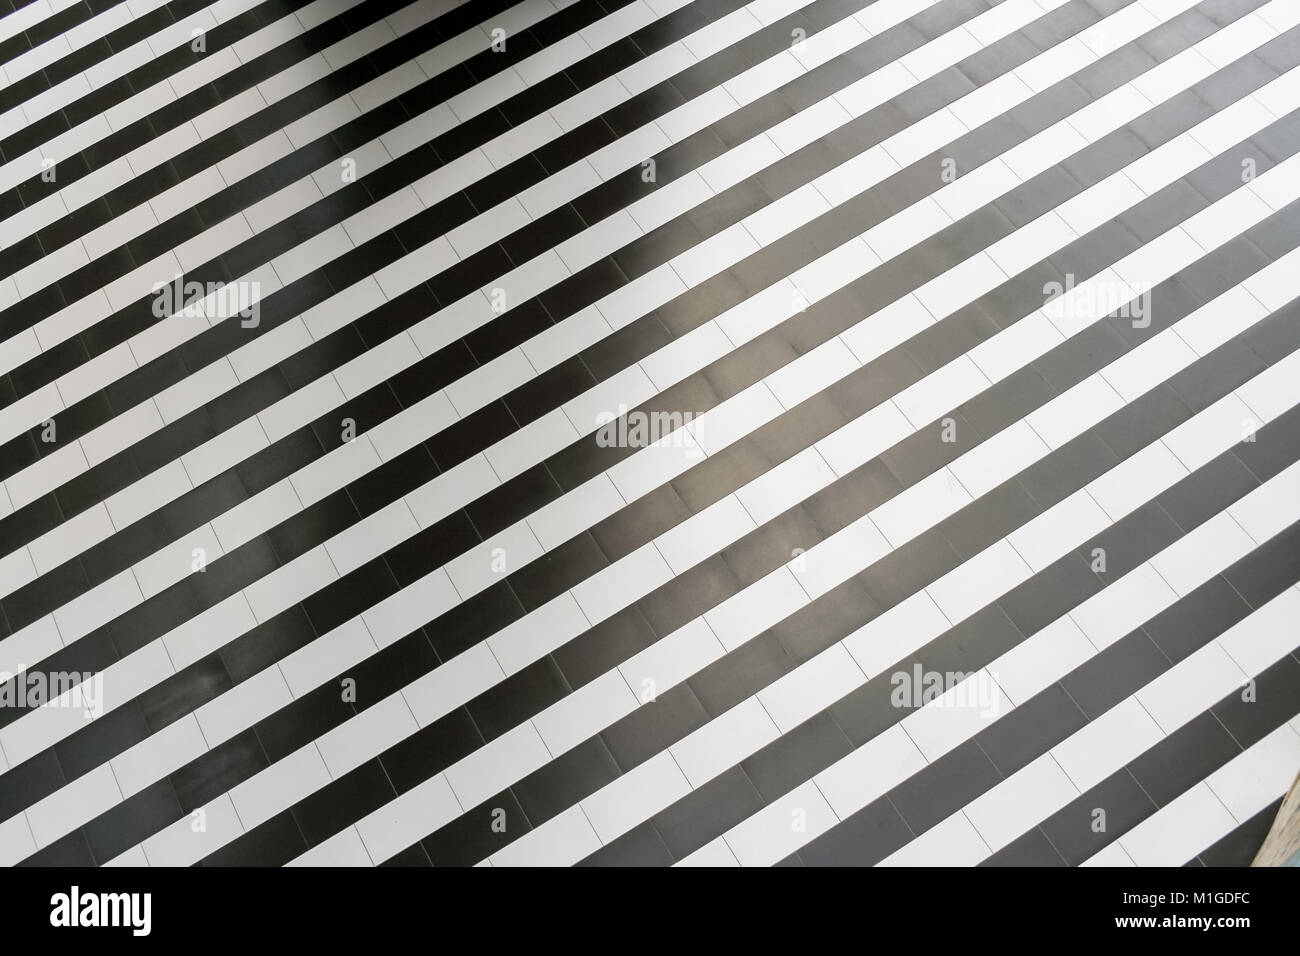 Abstrakte geometrische Muster der regelmäßigen abwechselnd schwarze und weiße Streifen auf dem Boden. Stockfoto